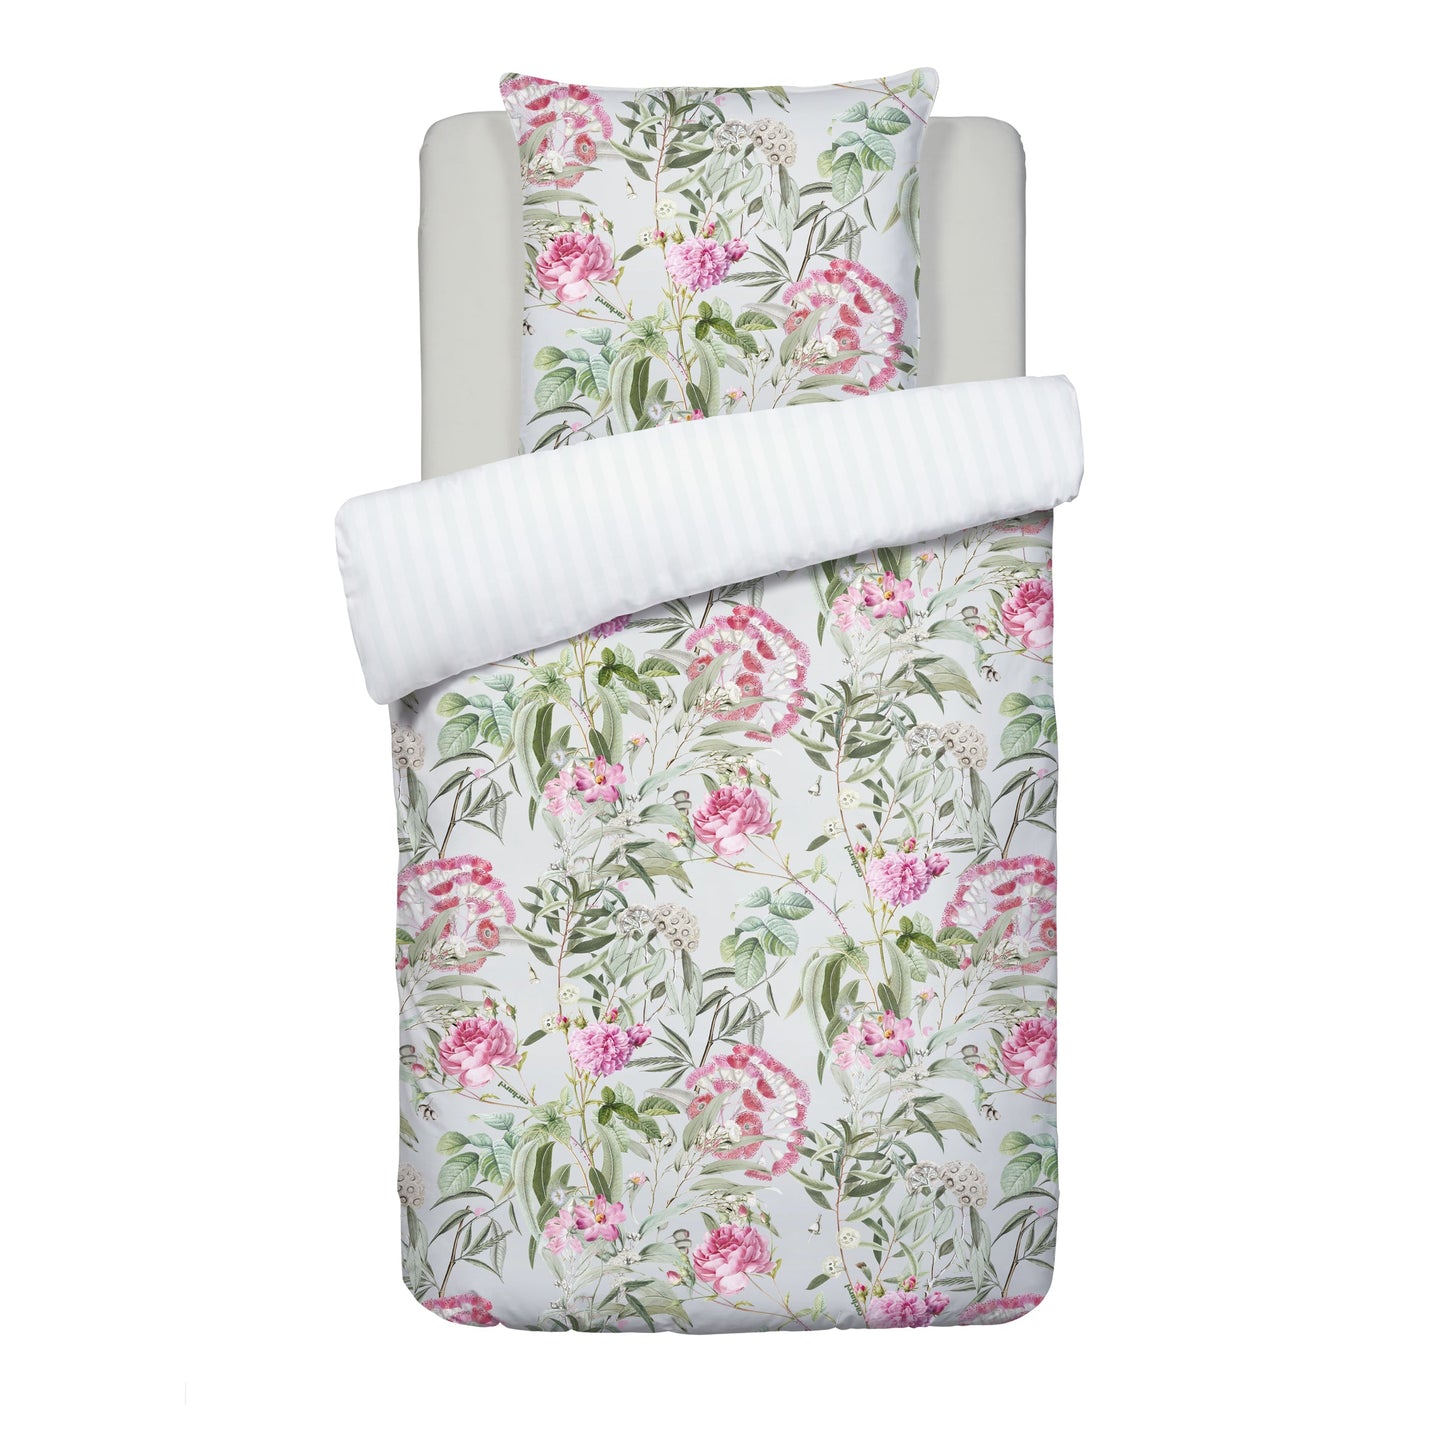 Duvet cover + pillowcase(s) cotton satin - dobby stripe Jardin de Roses Thyme Green